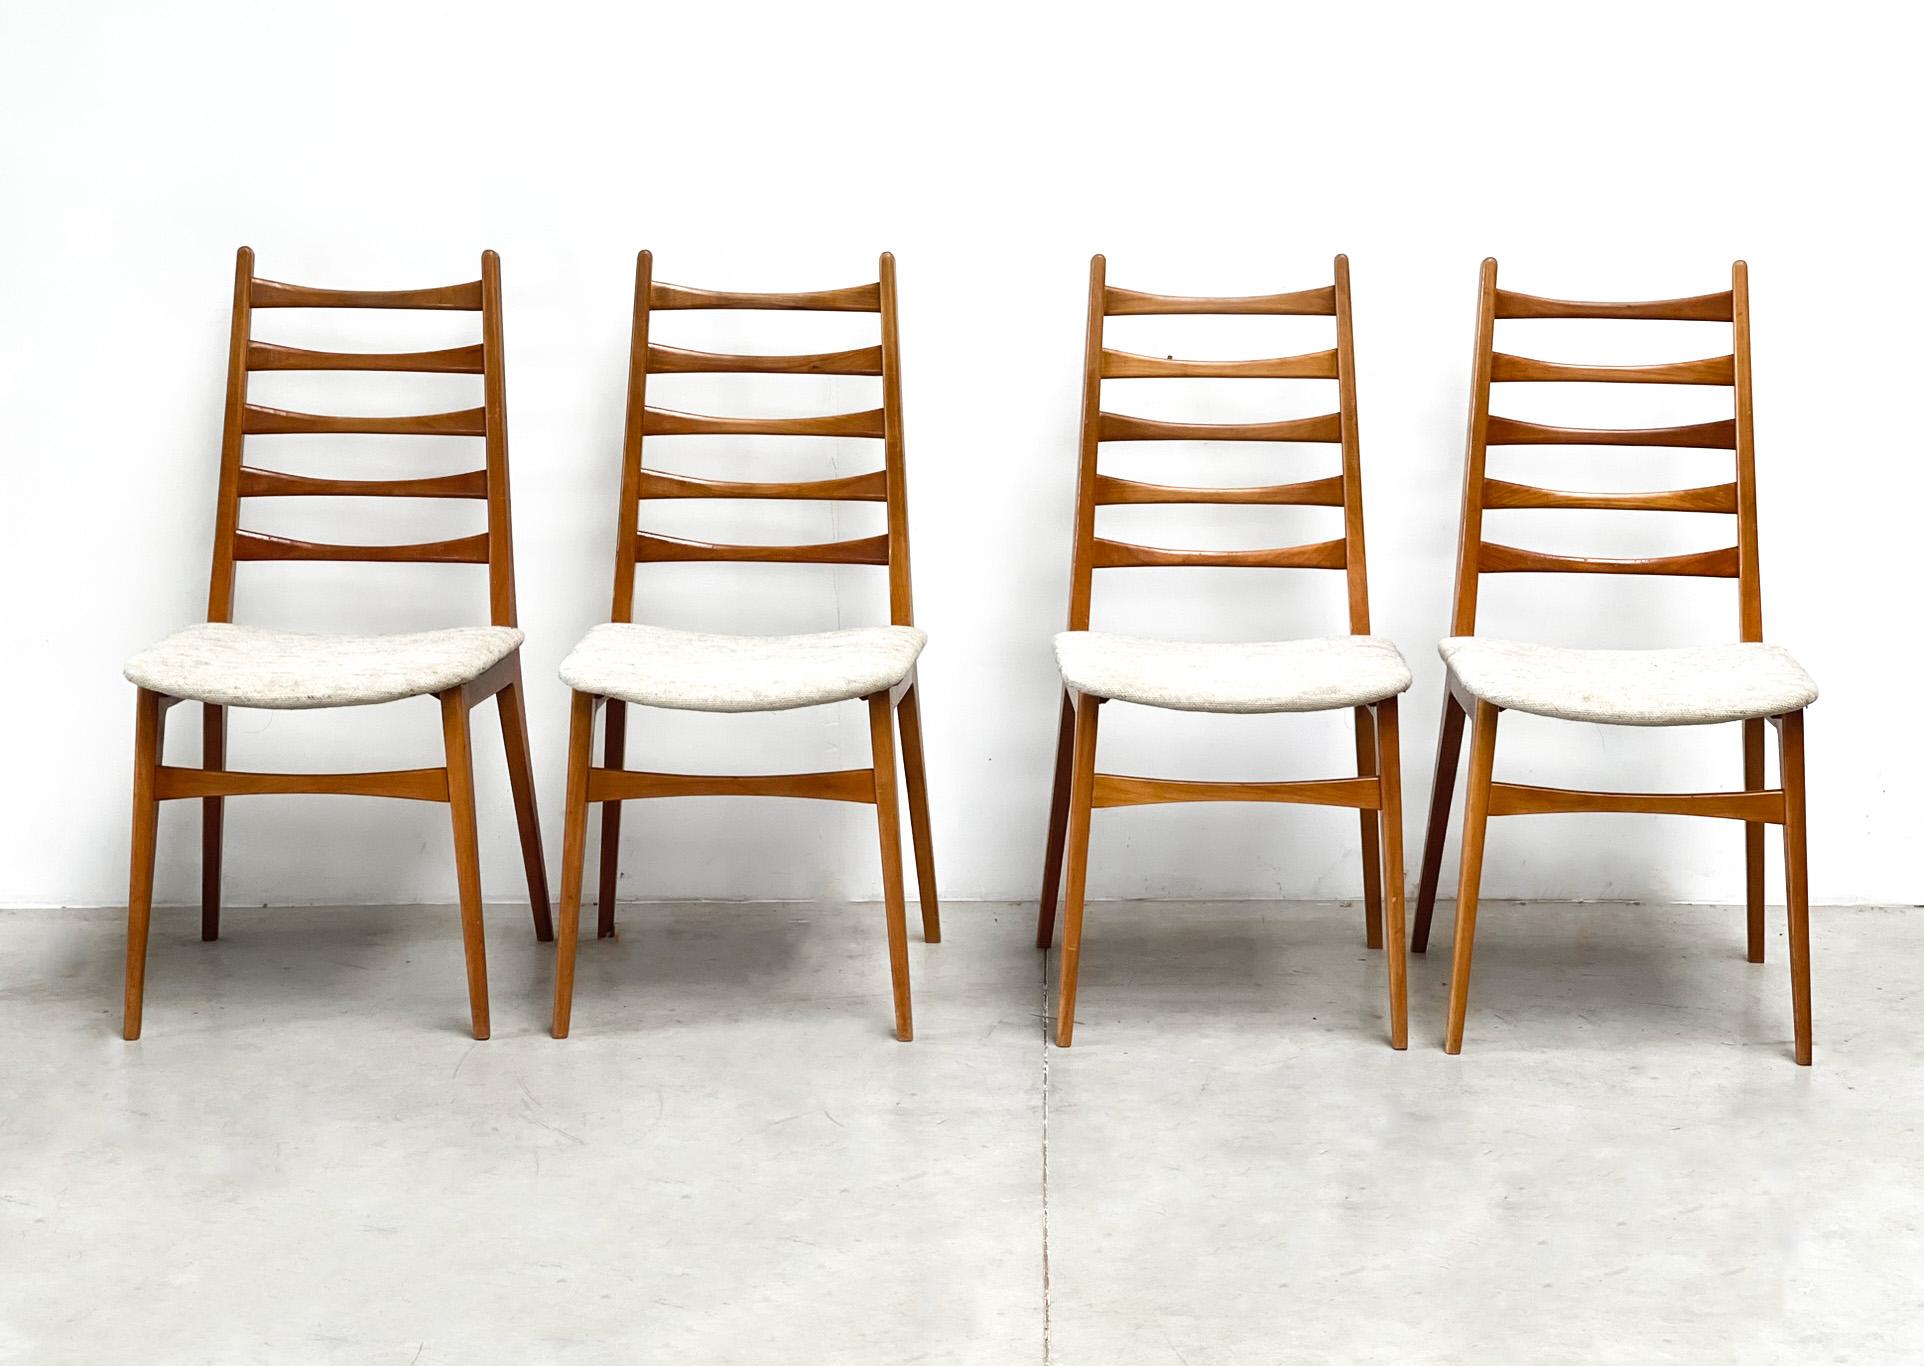 Satz von vier dänischen Esszimmerstühlen
Was für ein atemberaubendes Set von Esszimmerstühlen!

 

Diese vier Esszimmerstühle werden in Dänemark hergestellt. Sie wurden von einem kleinen Hersteller produziert. Sie wurden wahrscheinlich in den 1970er